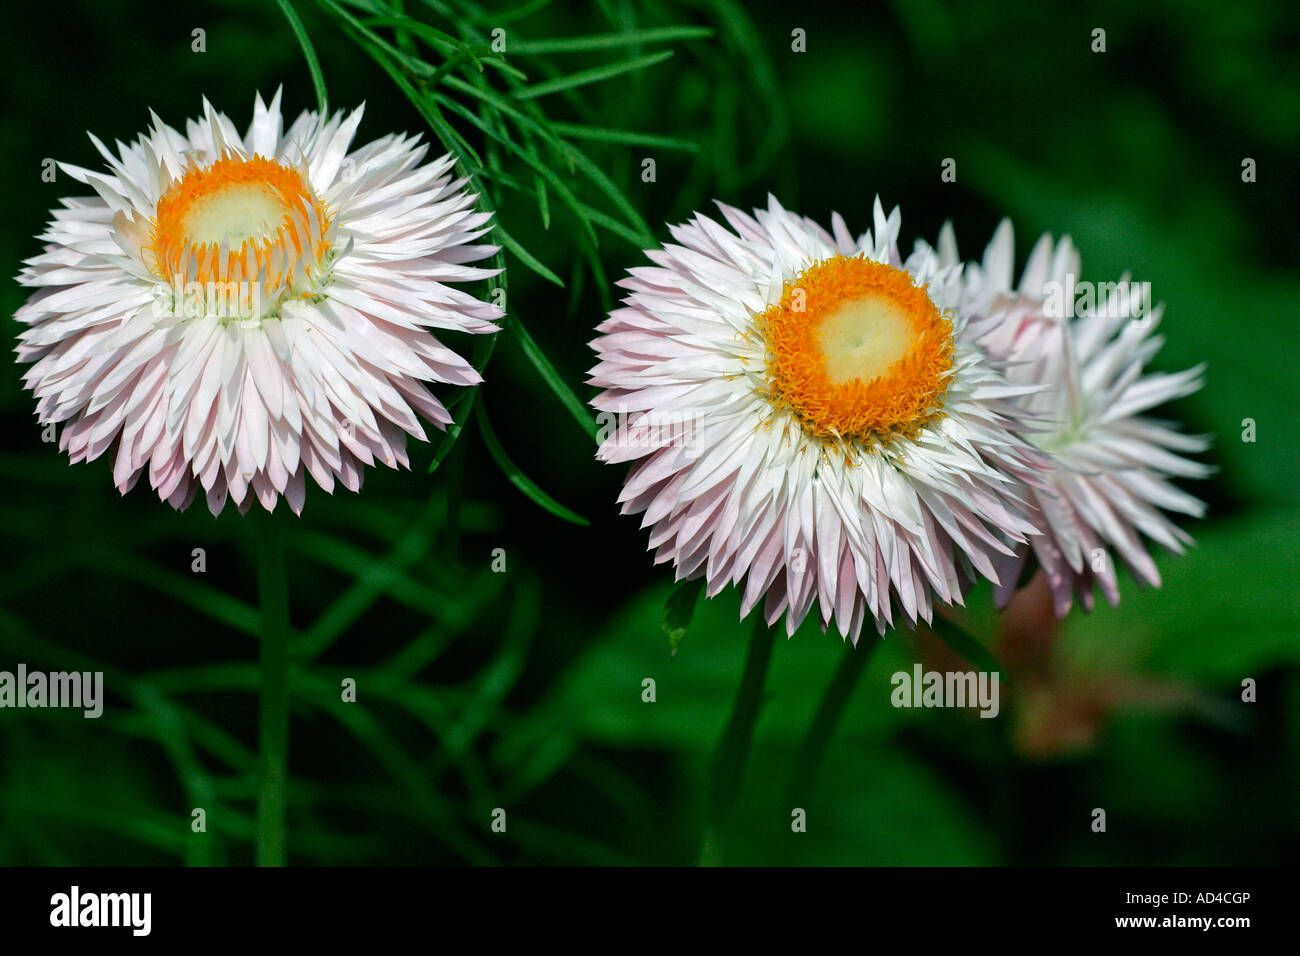 Flowering straw daisy - paper daisy (Helichrysum bracteatum) Stock Photo